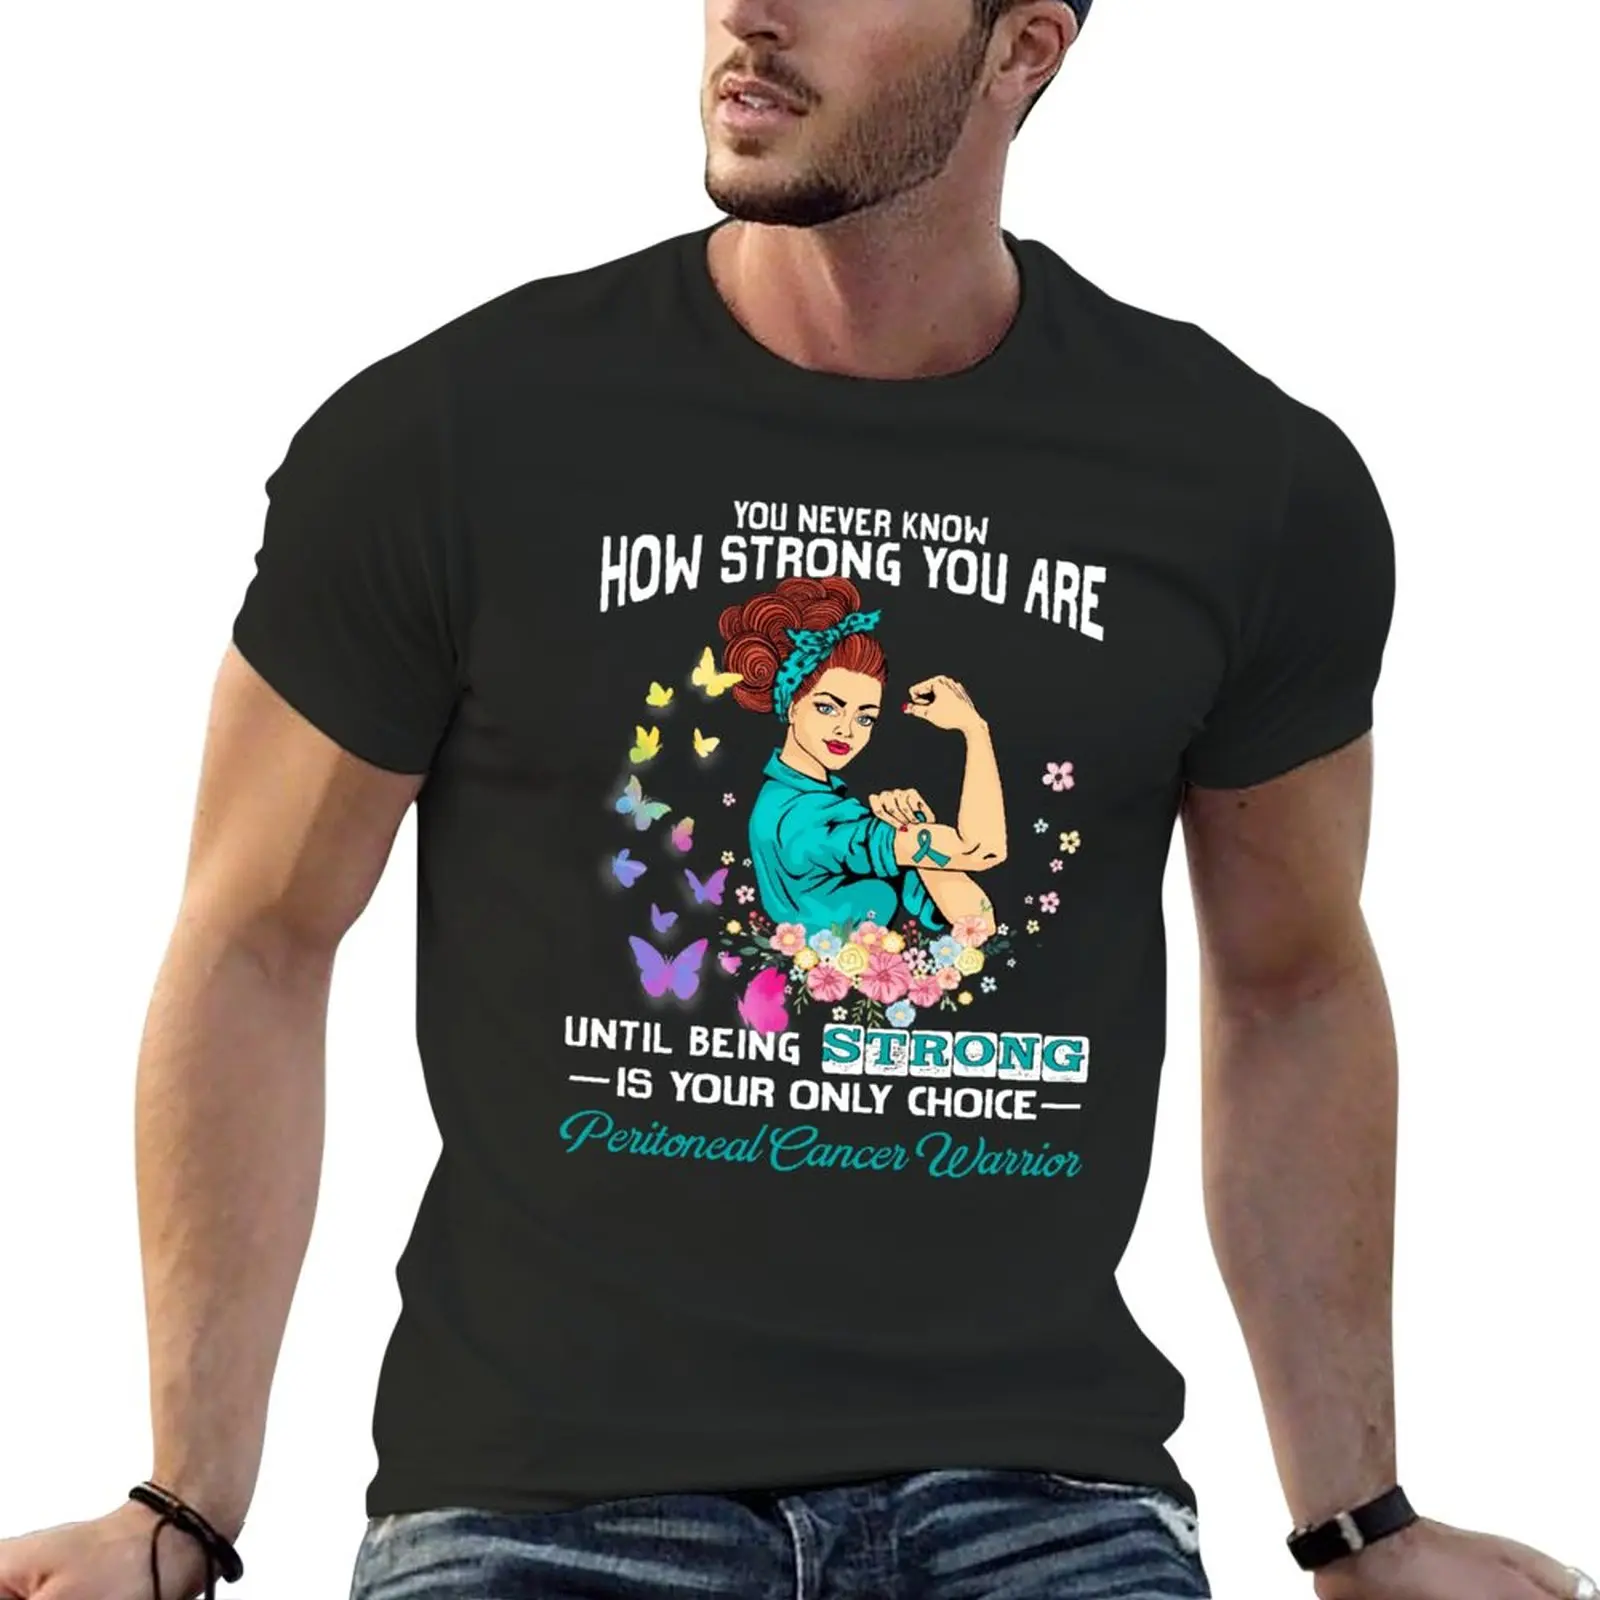 

Футболка Peritoneal с рисунком рака, воина, вы никогда не знаете, как сильная вы-это футболка для мальчика, летний топ, графические футболки, мужская одежда